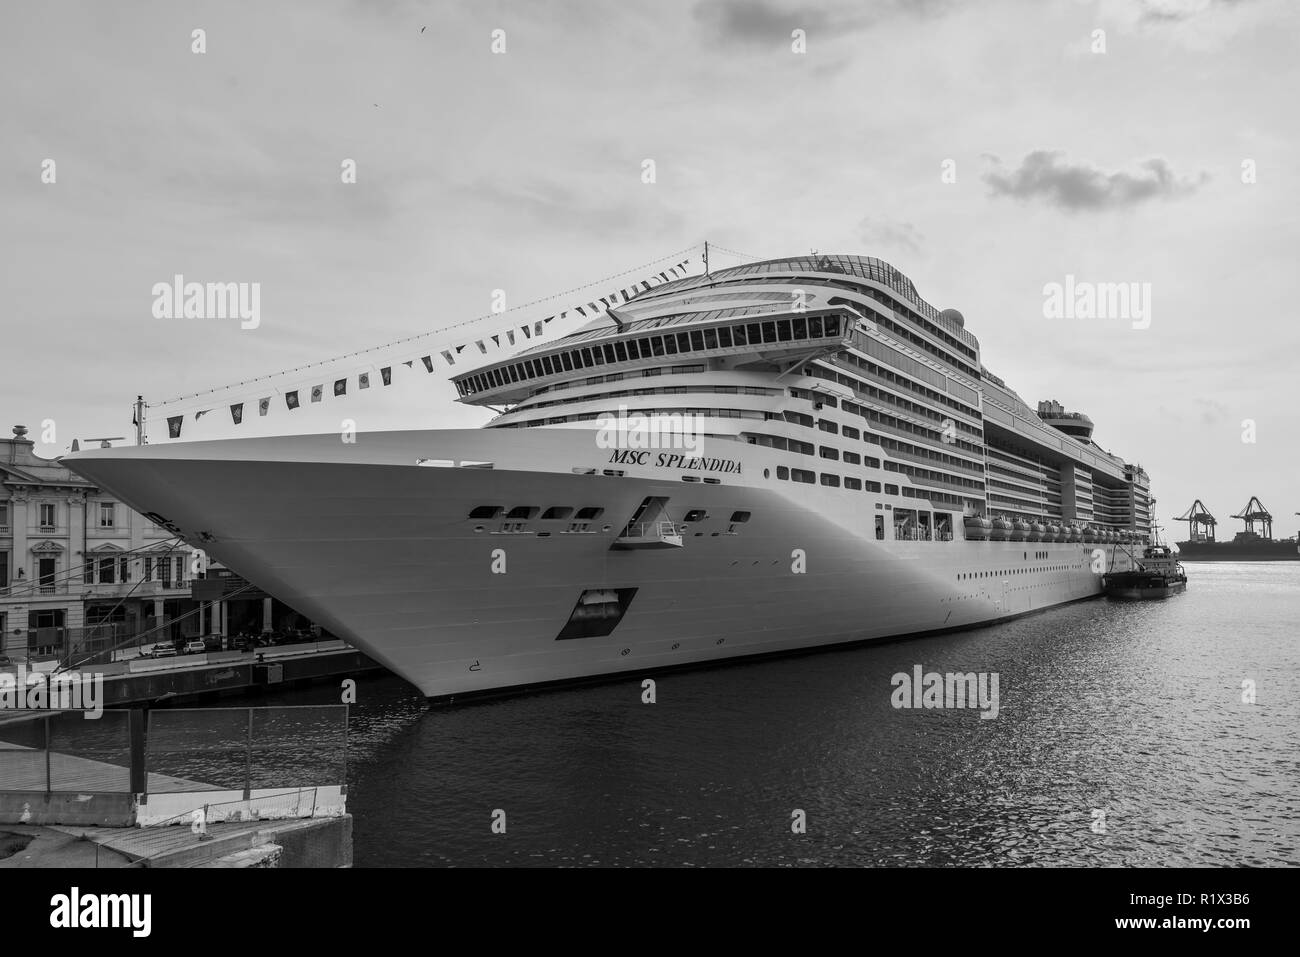 Genova, Italia - 28 Ottobre 2017: MSC splendida, una nave da crociera di proprietà di MSC Crociere ormeggiata nel porto di Genova (Genova), Liguria, costa mediterranea, Foto Stock